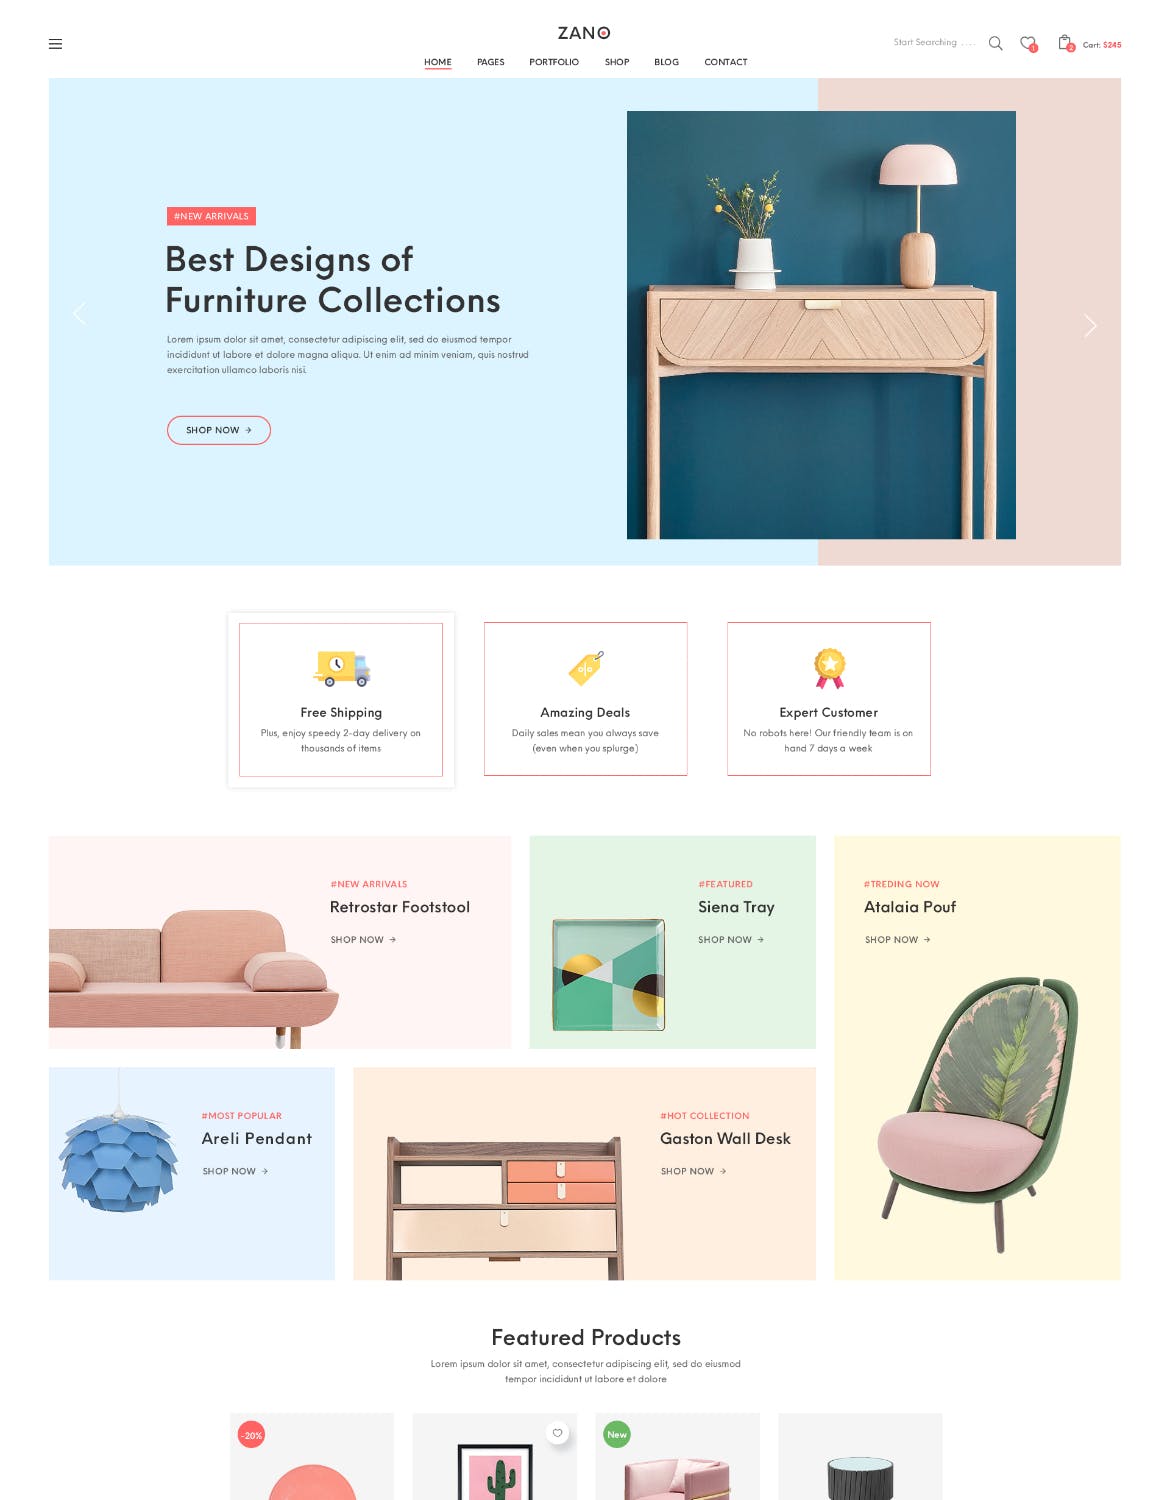 家具电子商务网上商城设计PSD模板 Zano | Furniture eCommerce PSD Template插图1